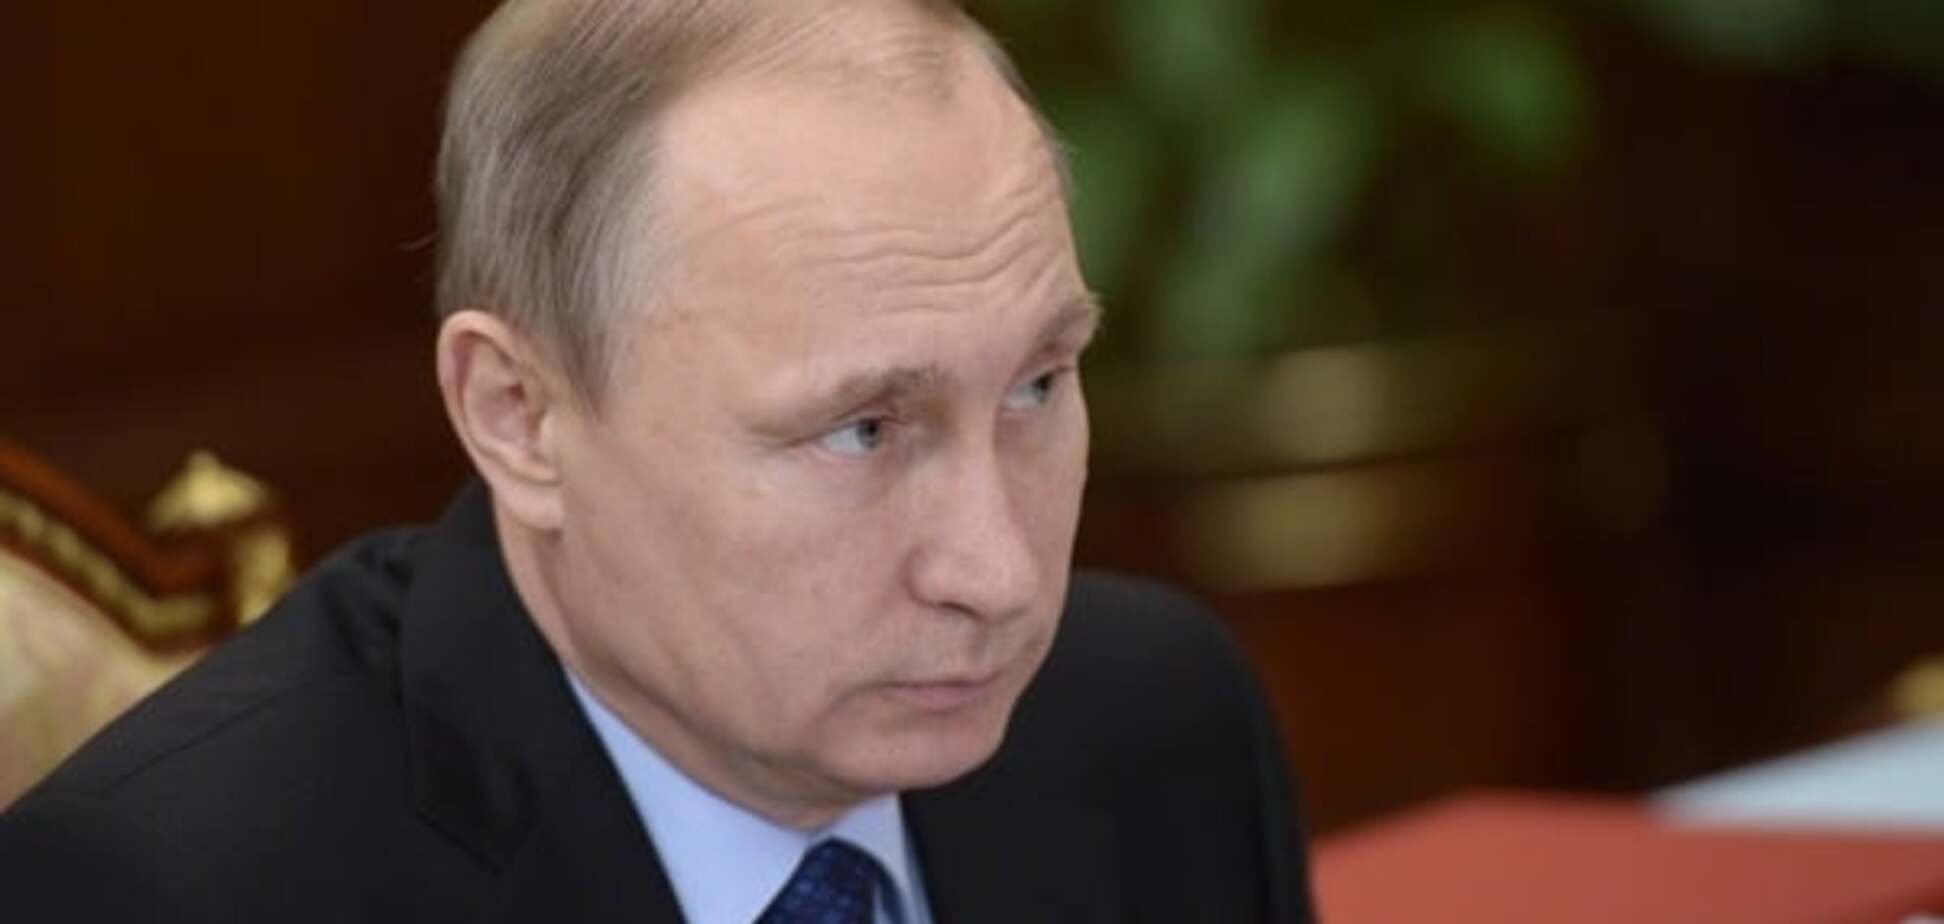 Скоро помре: лікар заявила, що у Путіна - рак простати